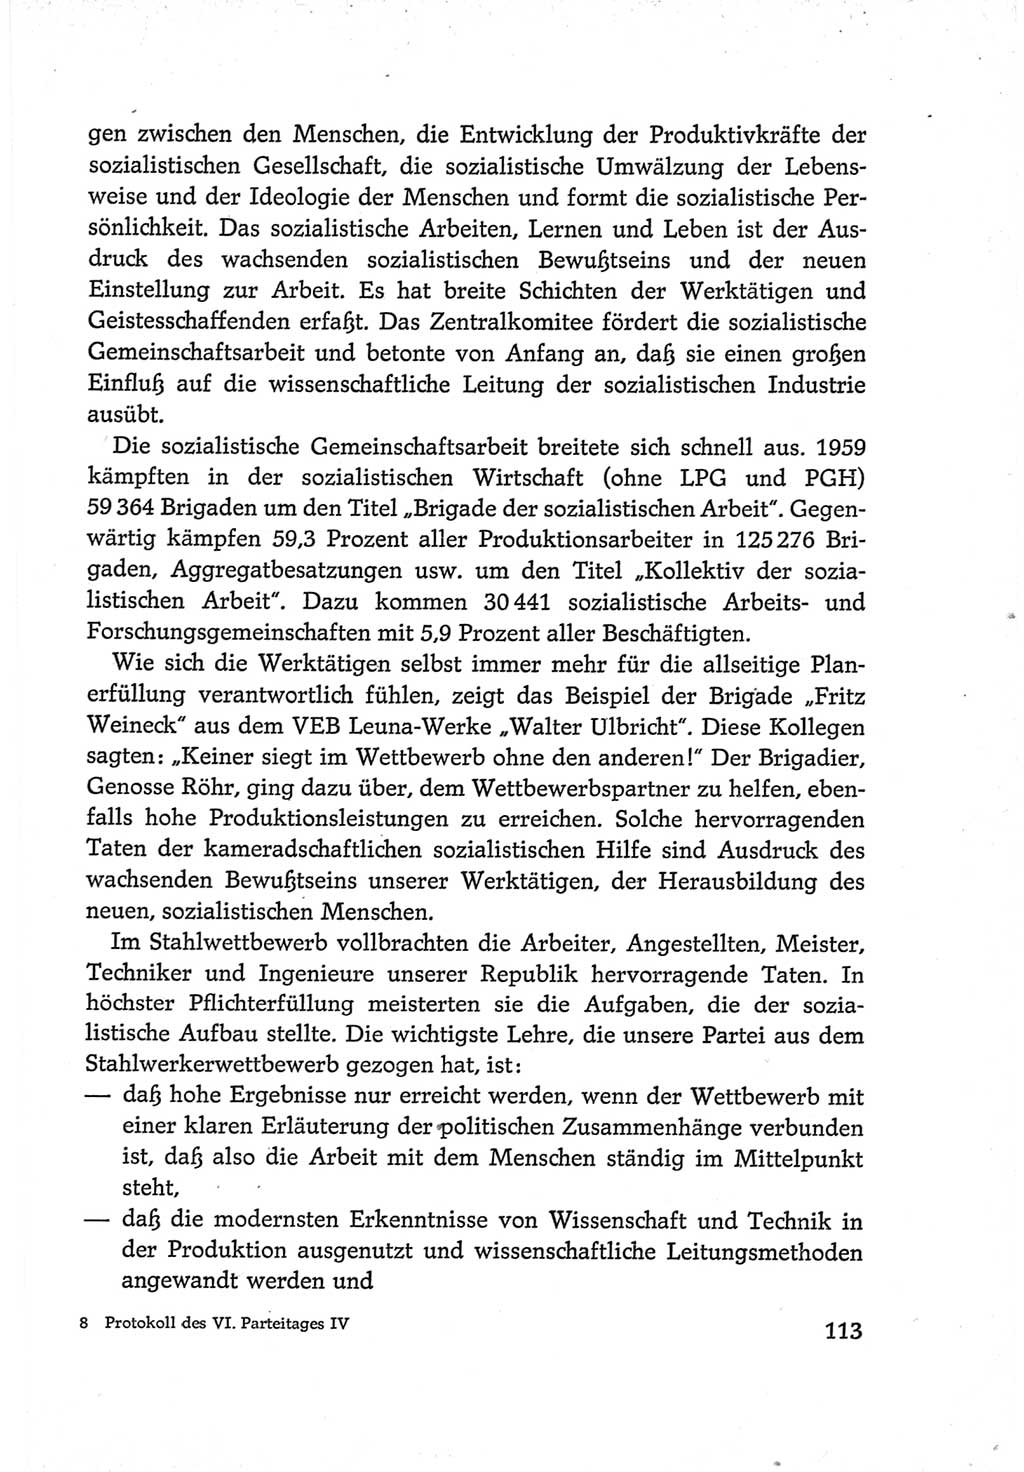 Protokoll der Verhandlungen des Ⅵ. Parteitages der Sozialistischen Einheitspartei Deutschlands (SED) [Deutsche Demokratische Republik (DDR)] 1963, Band Ⅳ, Seite 113 (Prot. Verh. Ⅵ. PT SED DDR 1963, Bd. Ⅳ, S. 113)